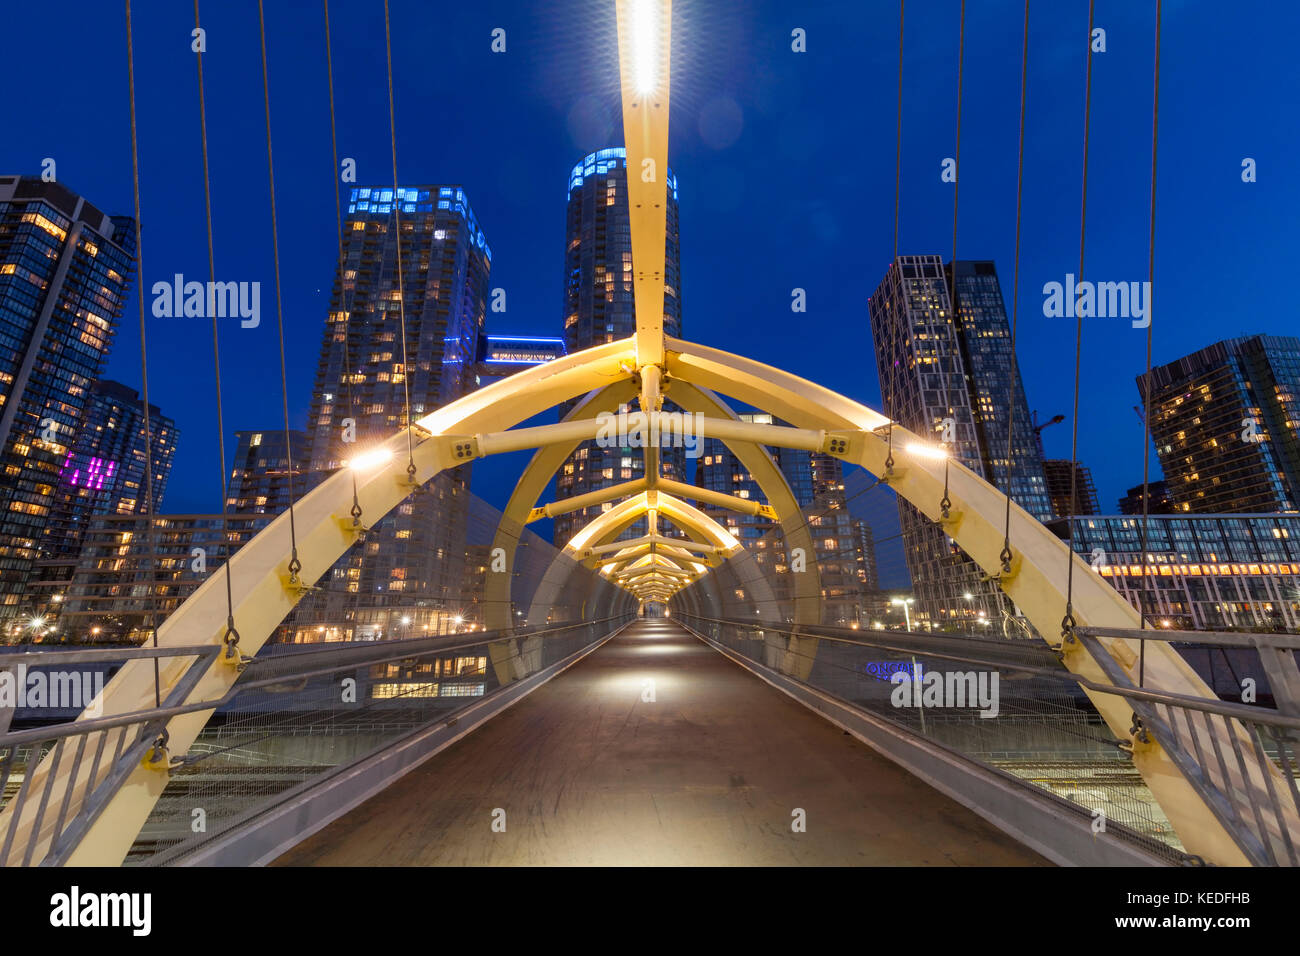 El Puente de Luz (puente de luz) puente peatonal diseñado por Francisco Gazitua que conecta a CityPlace Concord Front St. en el centro de Toronto. Foto de stock